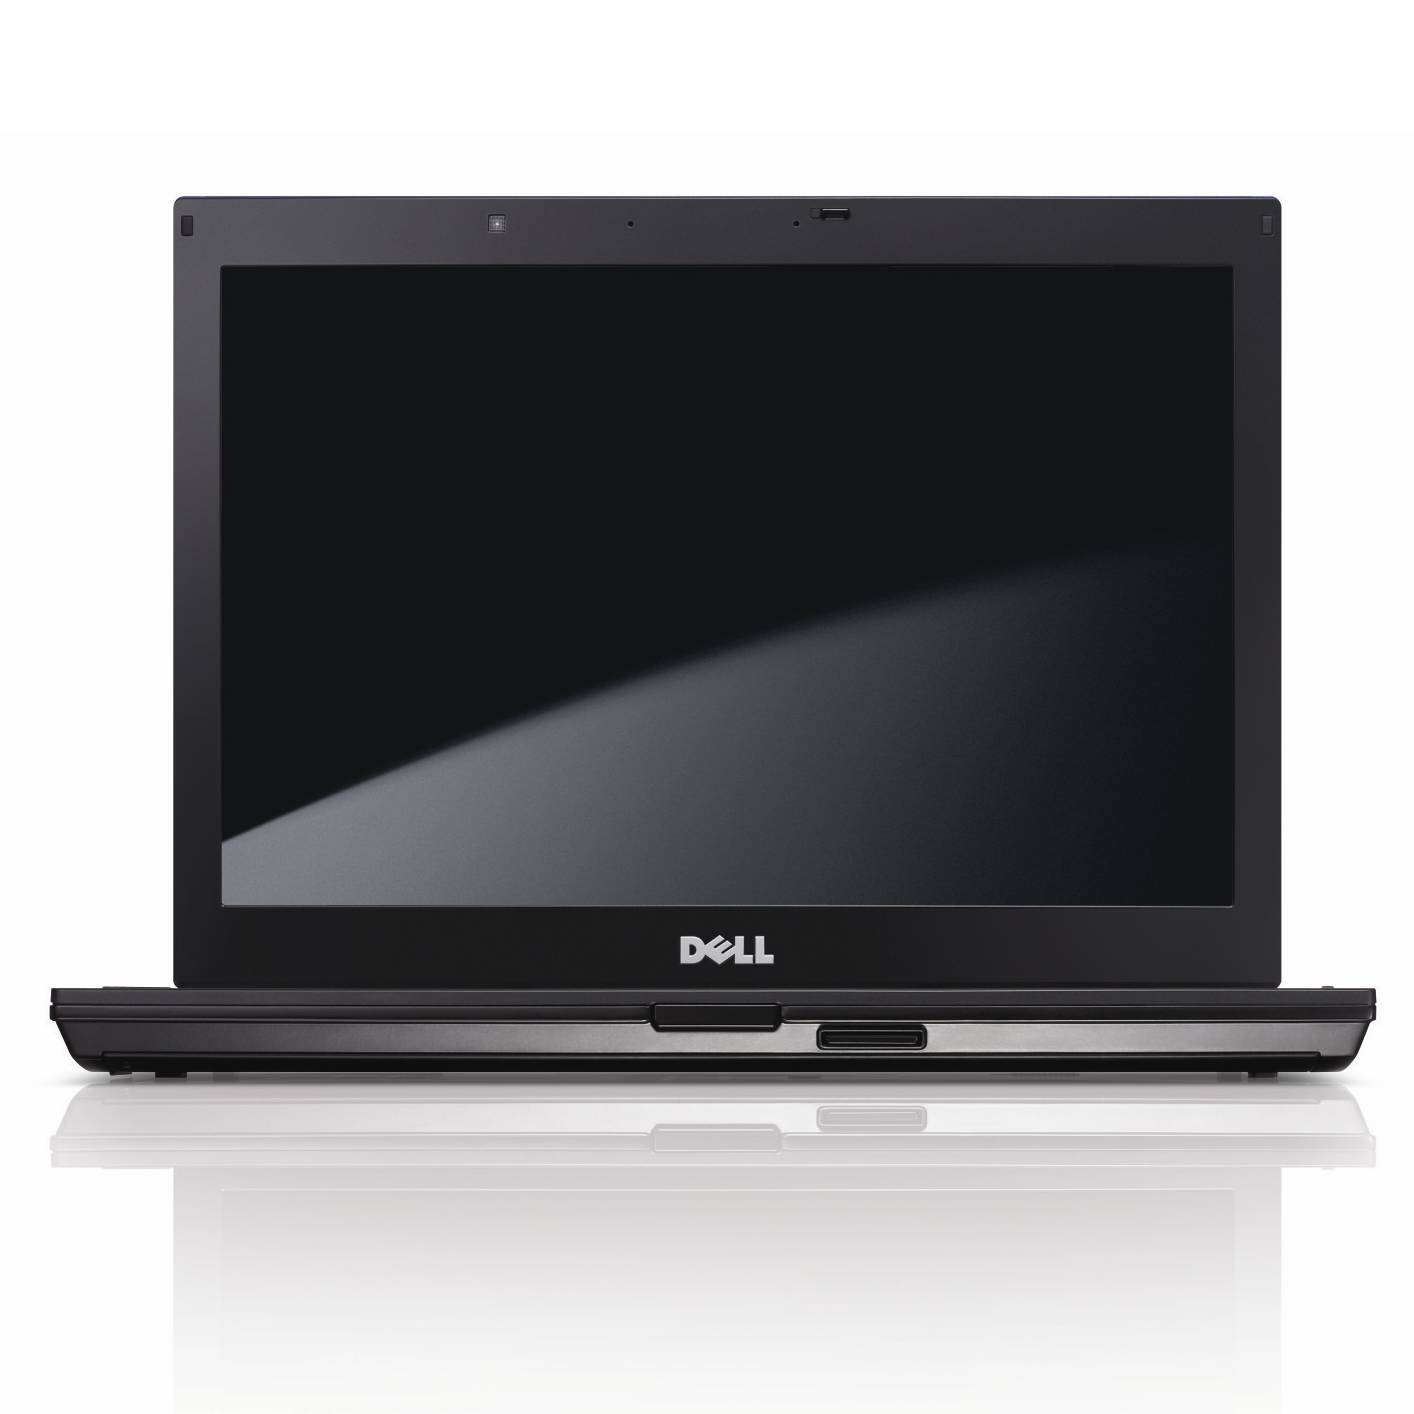 Dell E6410 front (1)